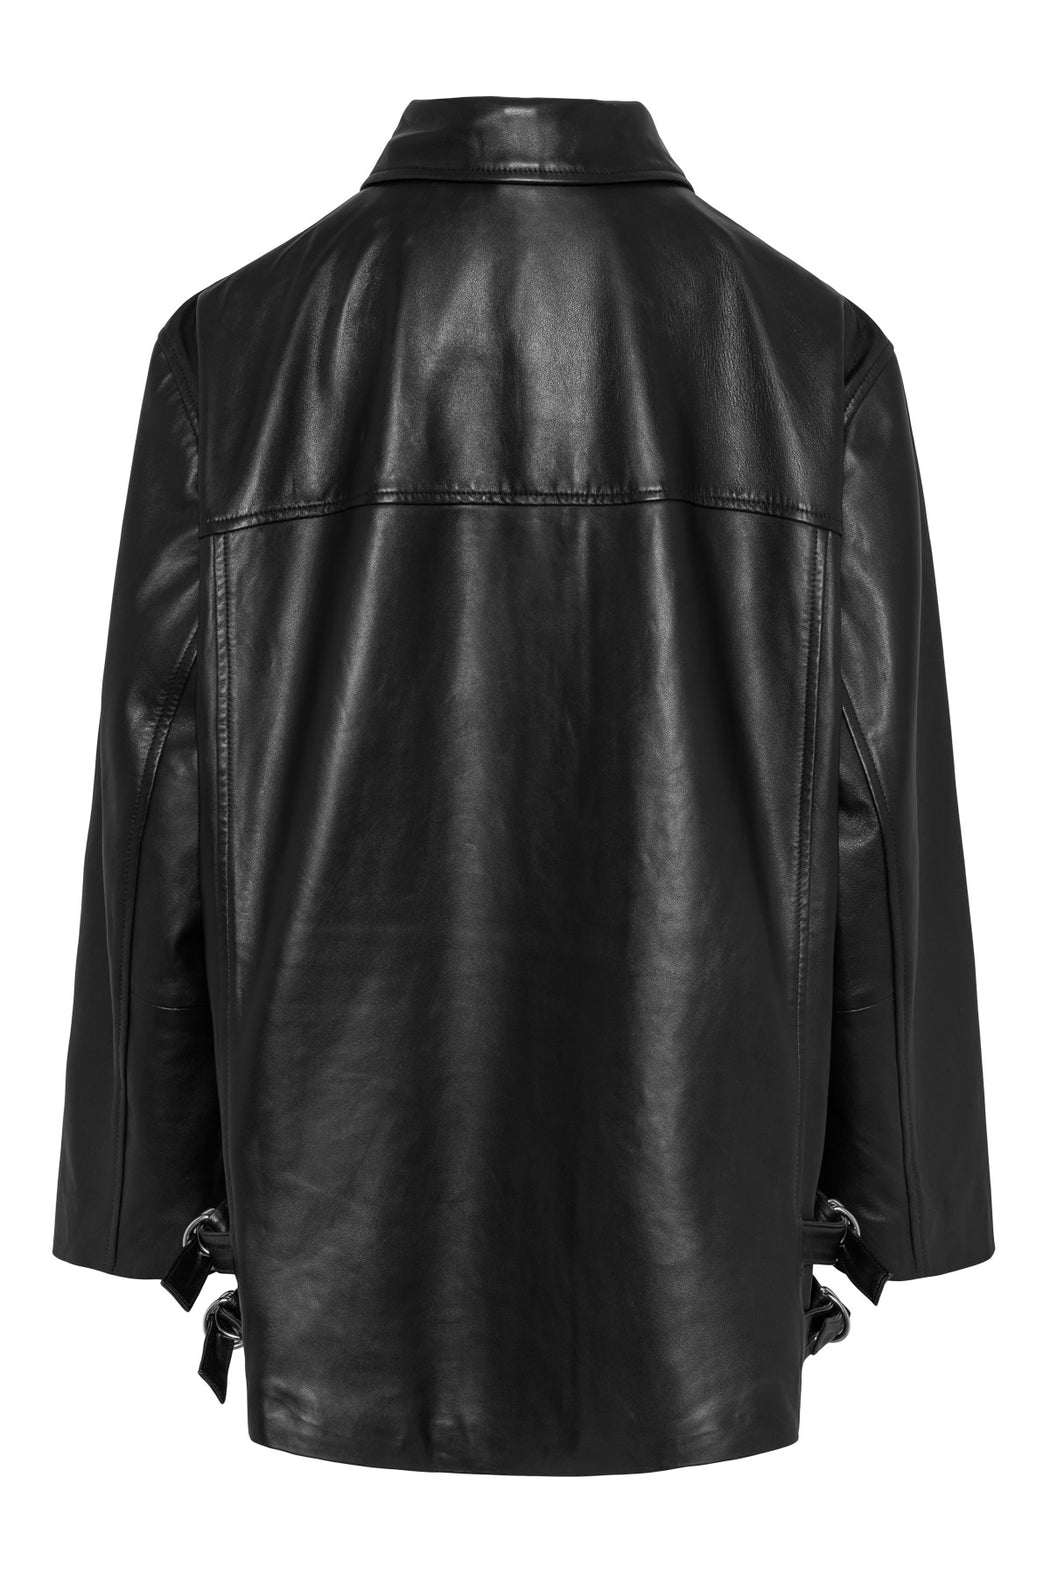 Envelope1976 Bodhi jacket - Leather Jacket Black